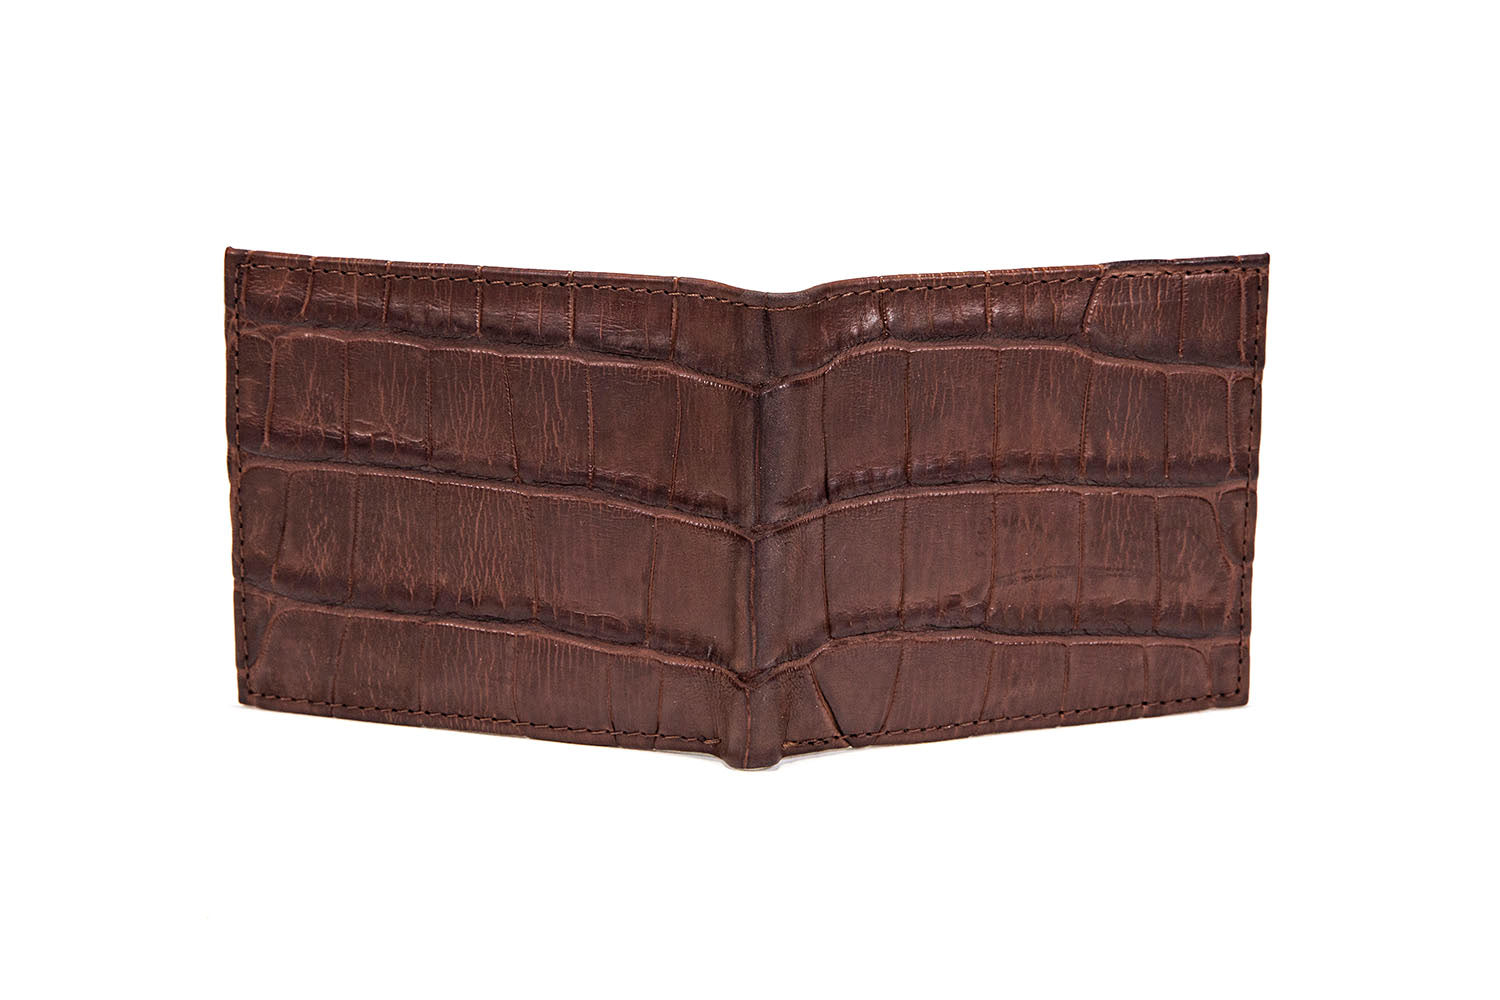 Alligator Leather Bifold Wallet, Brown Alligator